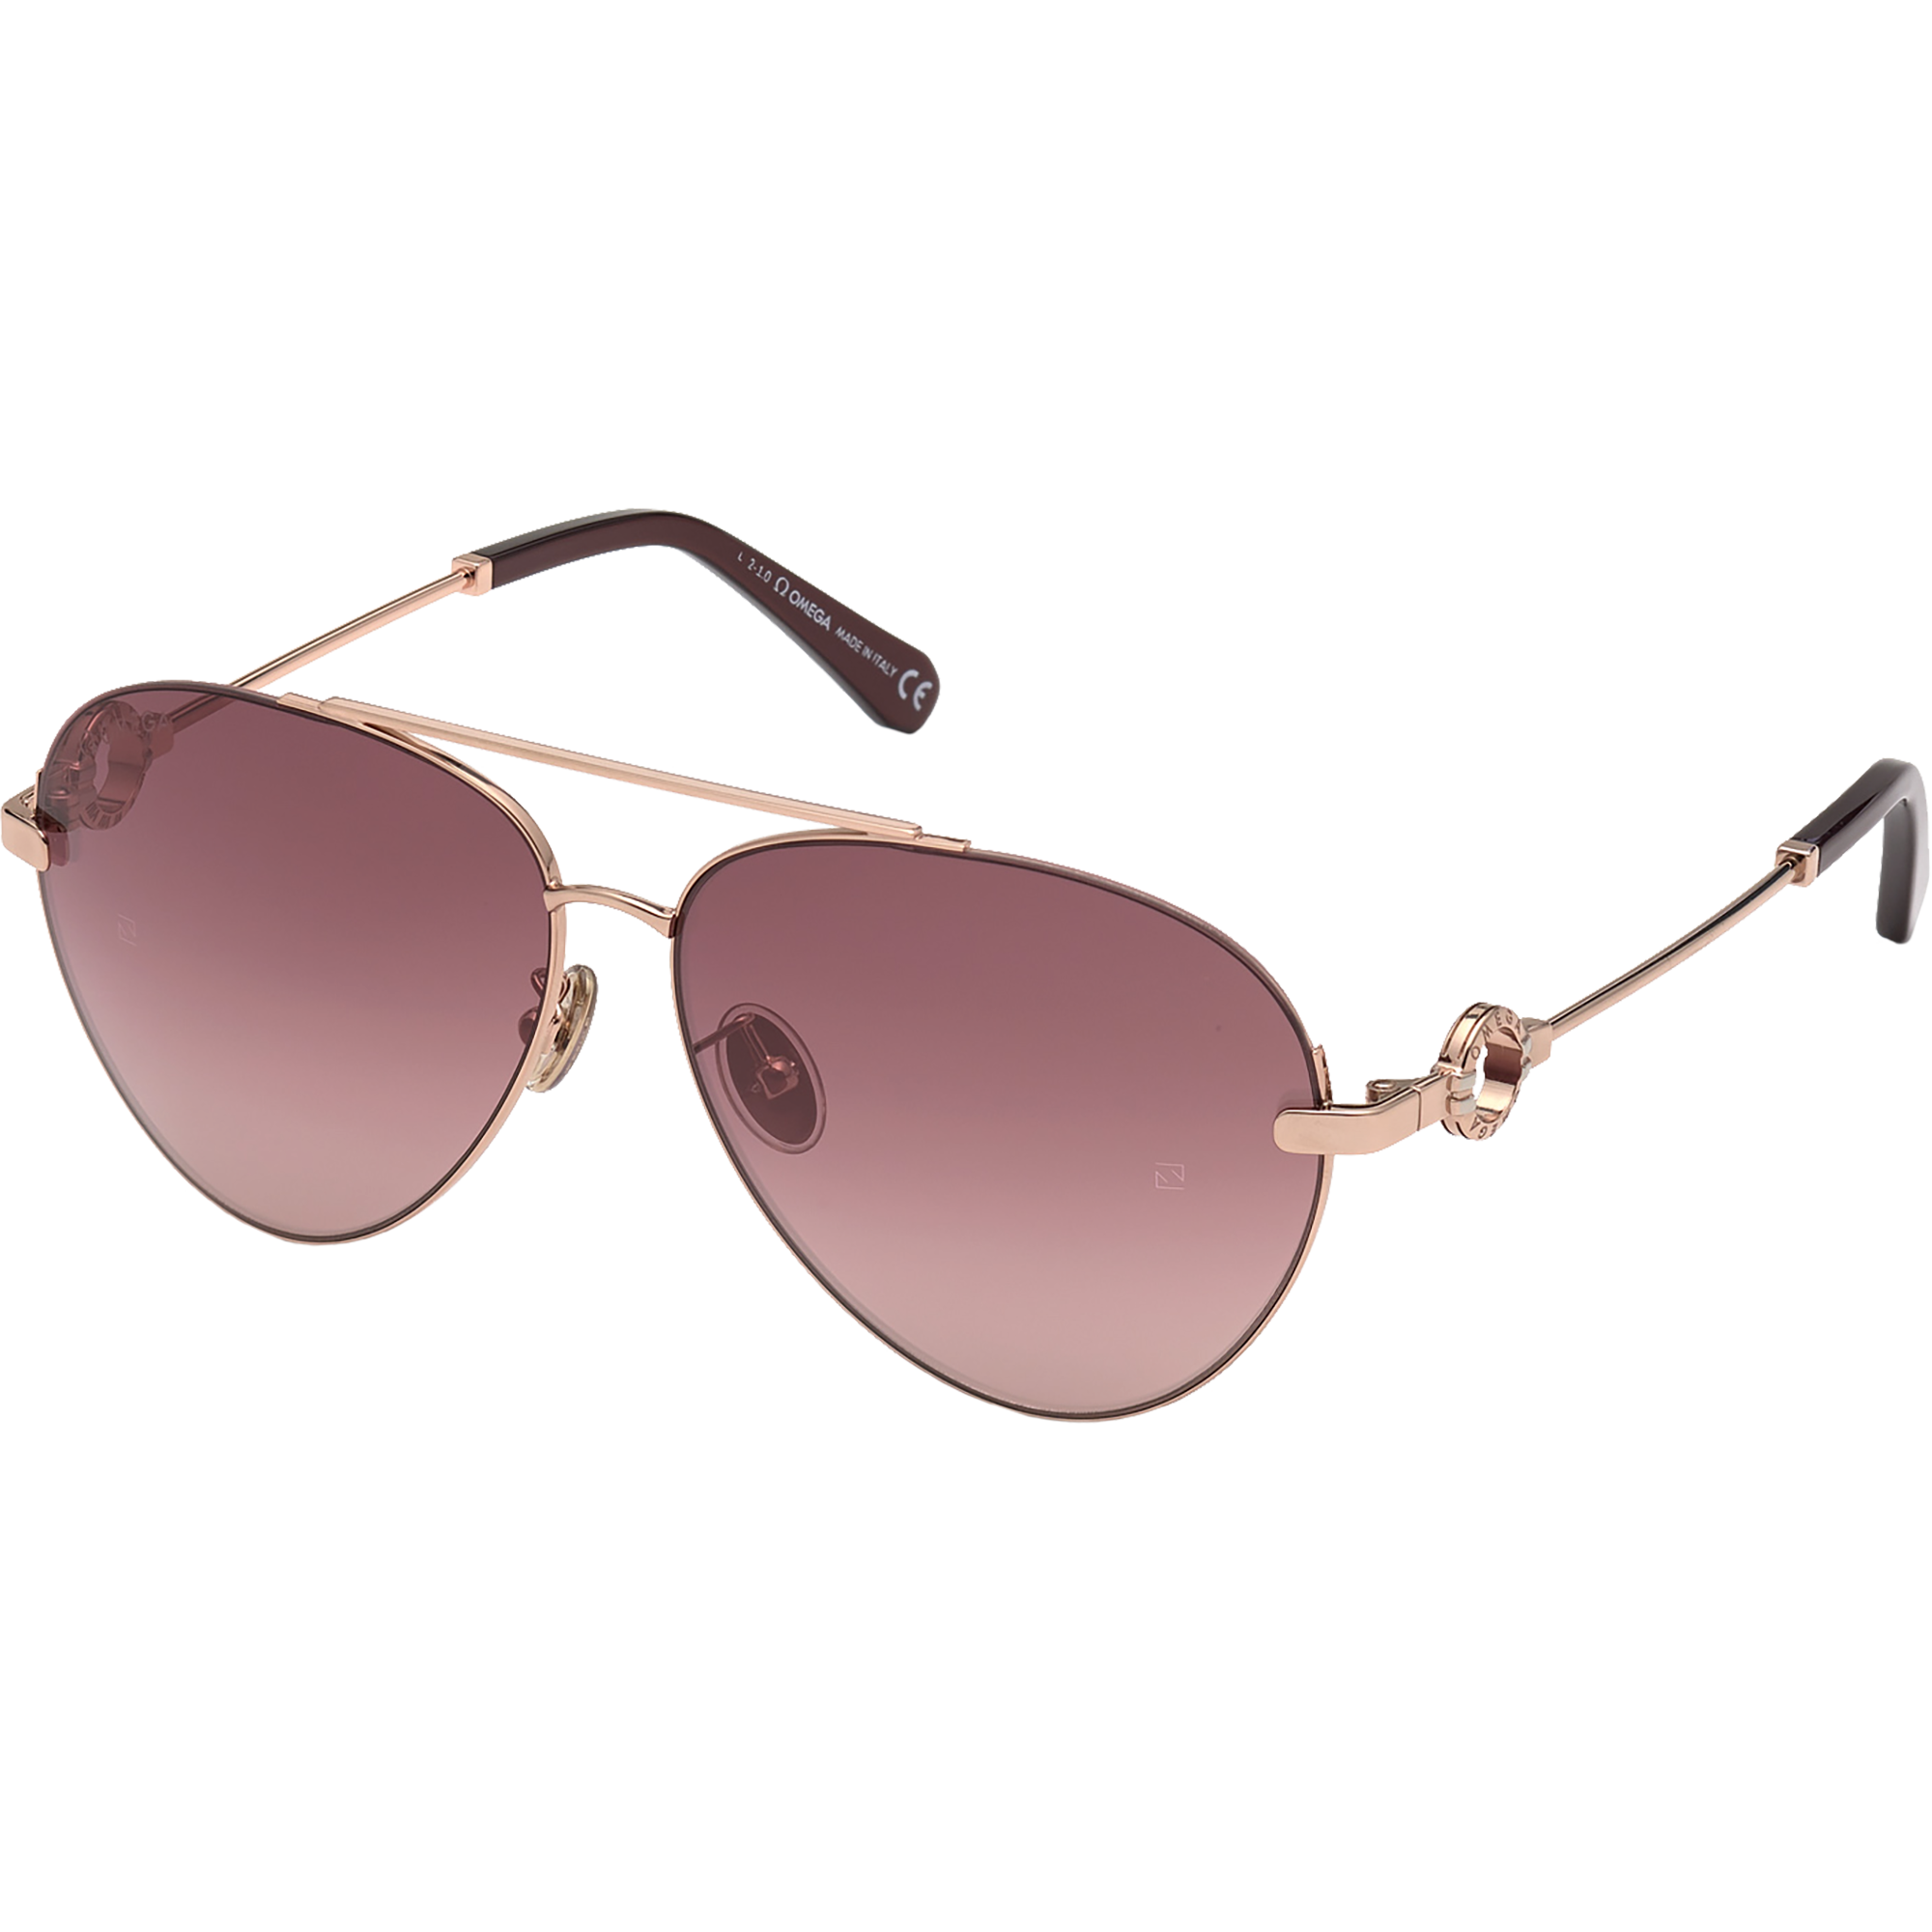 Солнцезащитные очки - Форма "авиатор", Женские очки - OM0031-H6128U